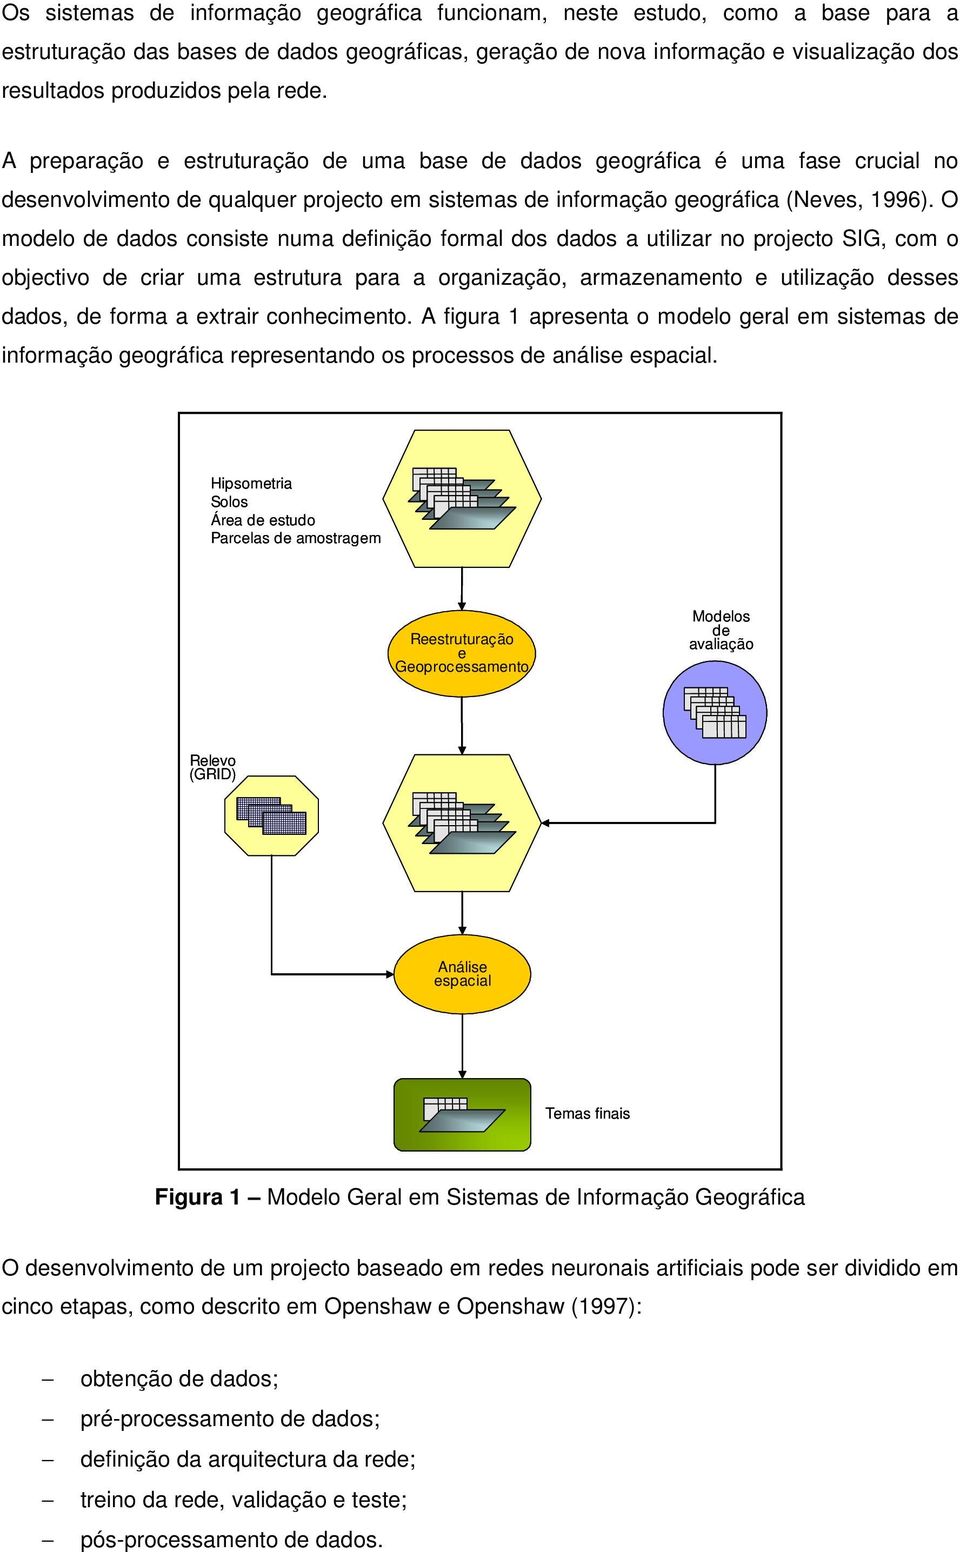 O modelo de dados consiste numa definição formal dos dados a utilizar no projecto SIG, com o objectivo de criar uma estrutura para a organização, armazenamento e utilização desses dados, de forma a